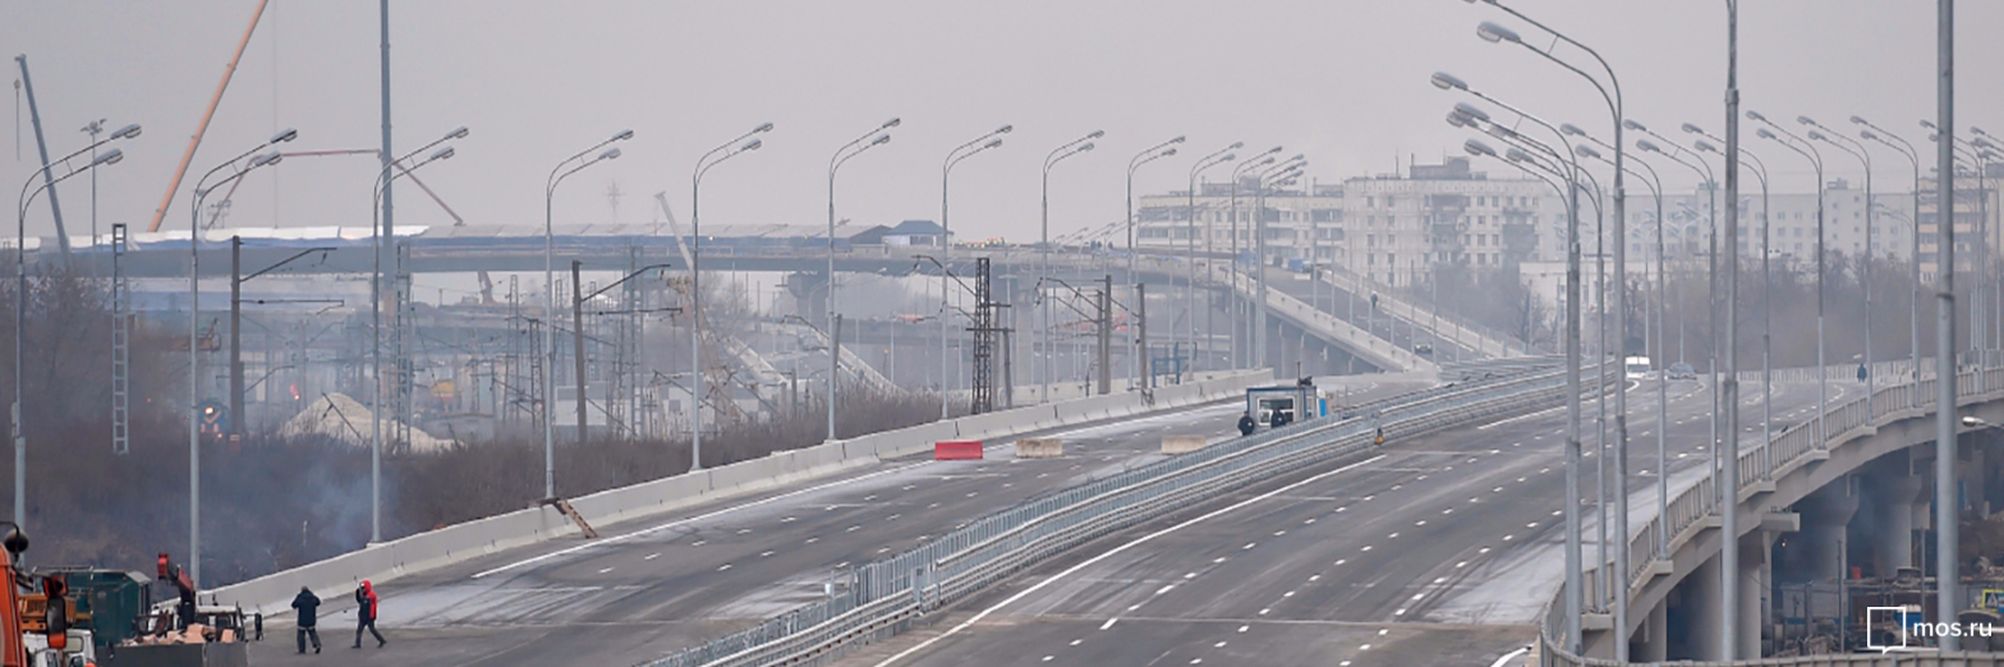 Протяженность дорог в ТиНАО к 2035 году превысит 2 тыс. км